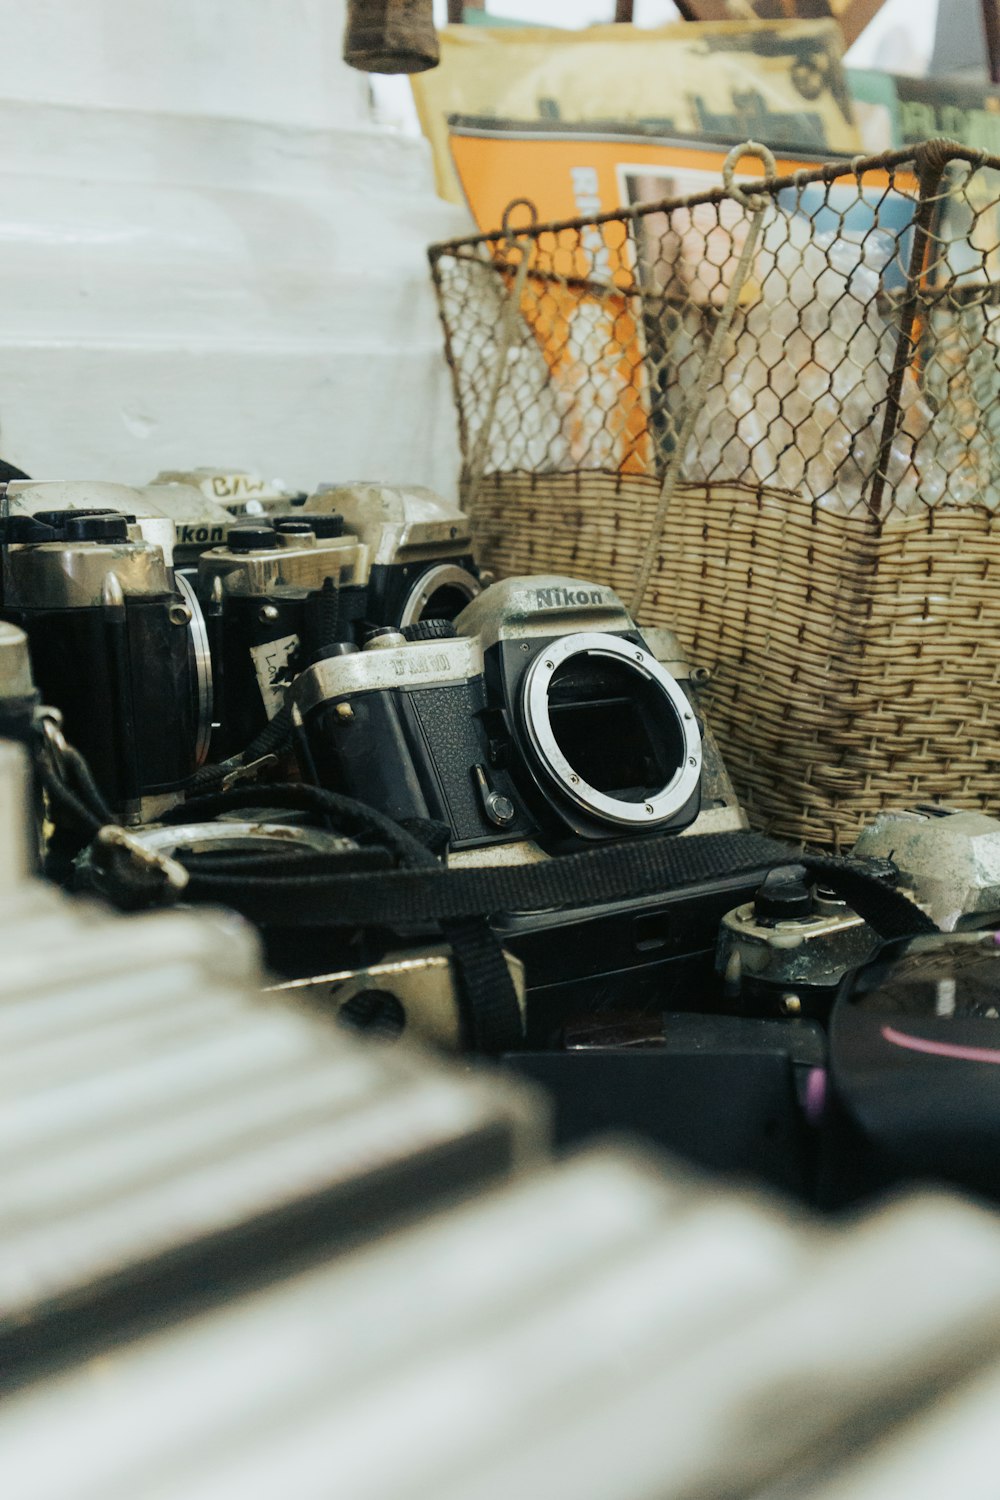 a basket and camera on a shelf